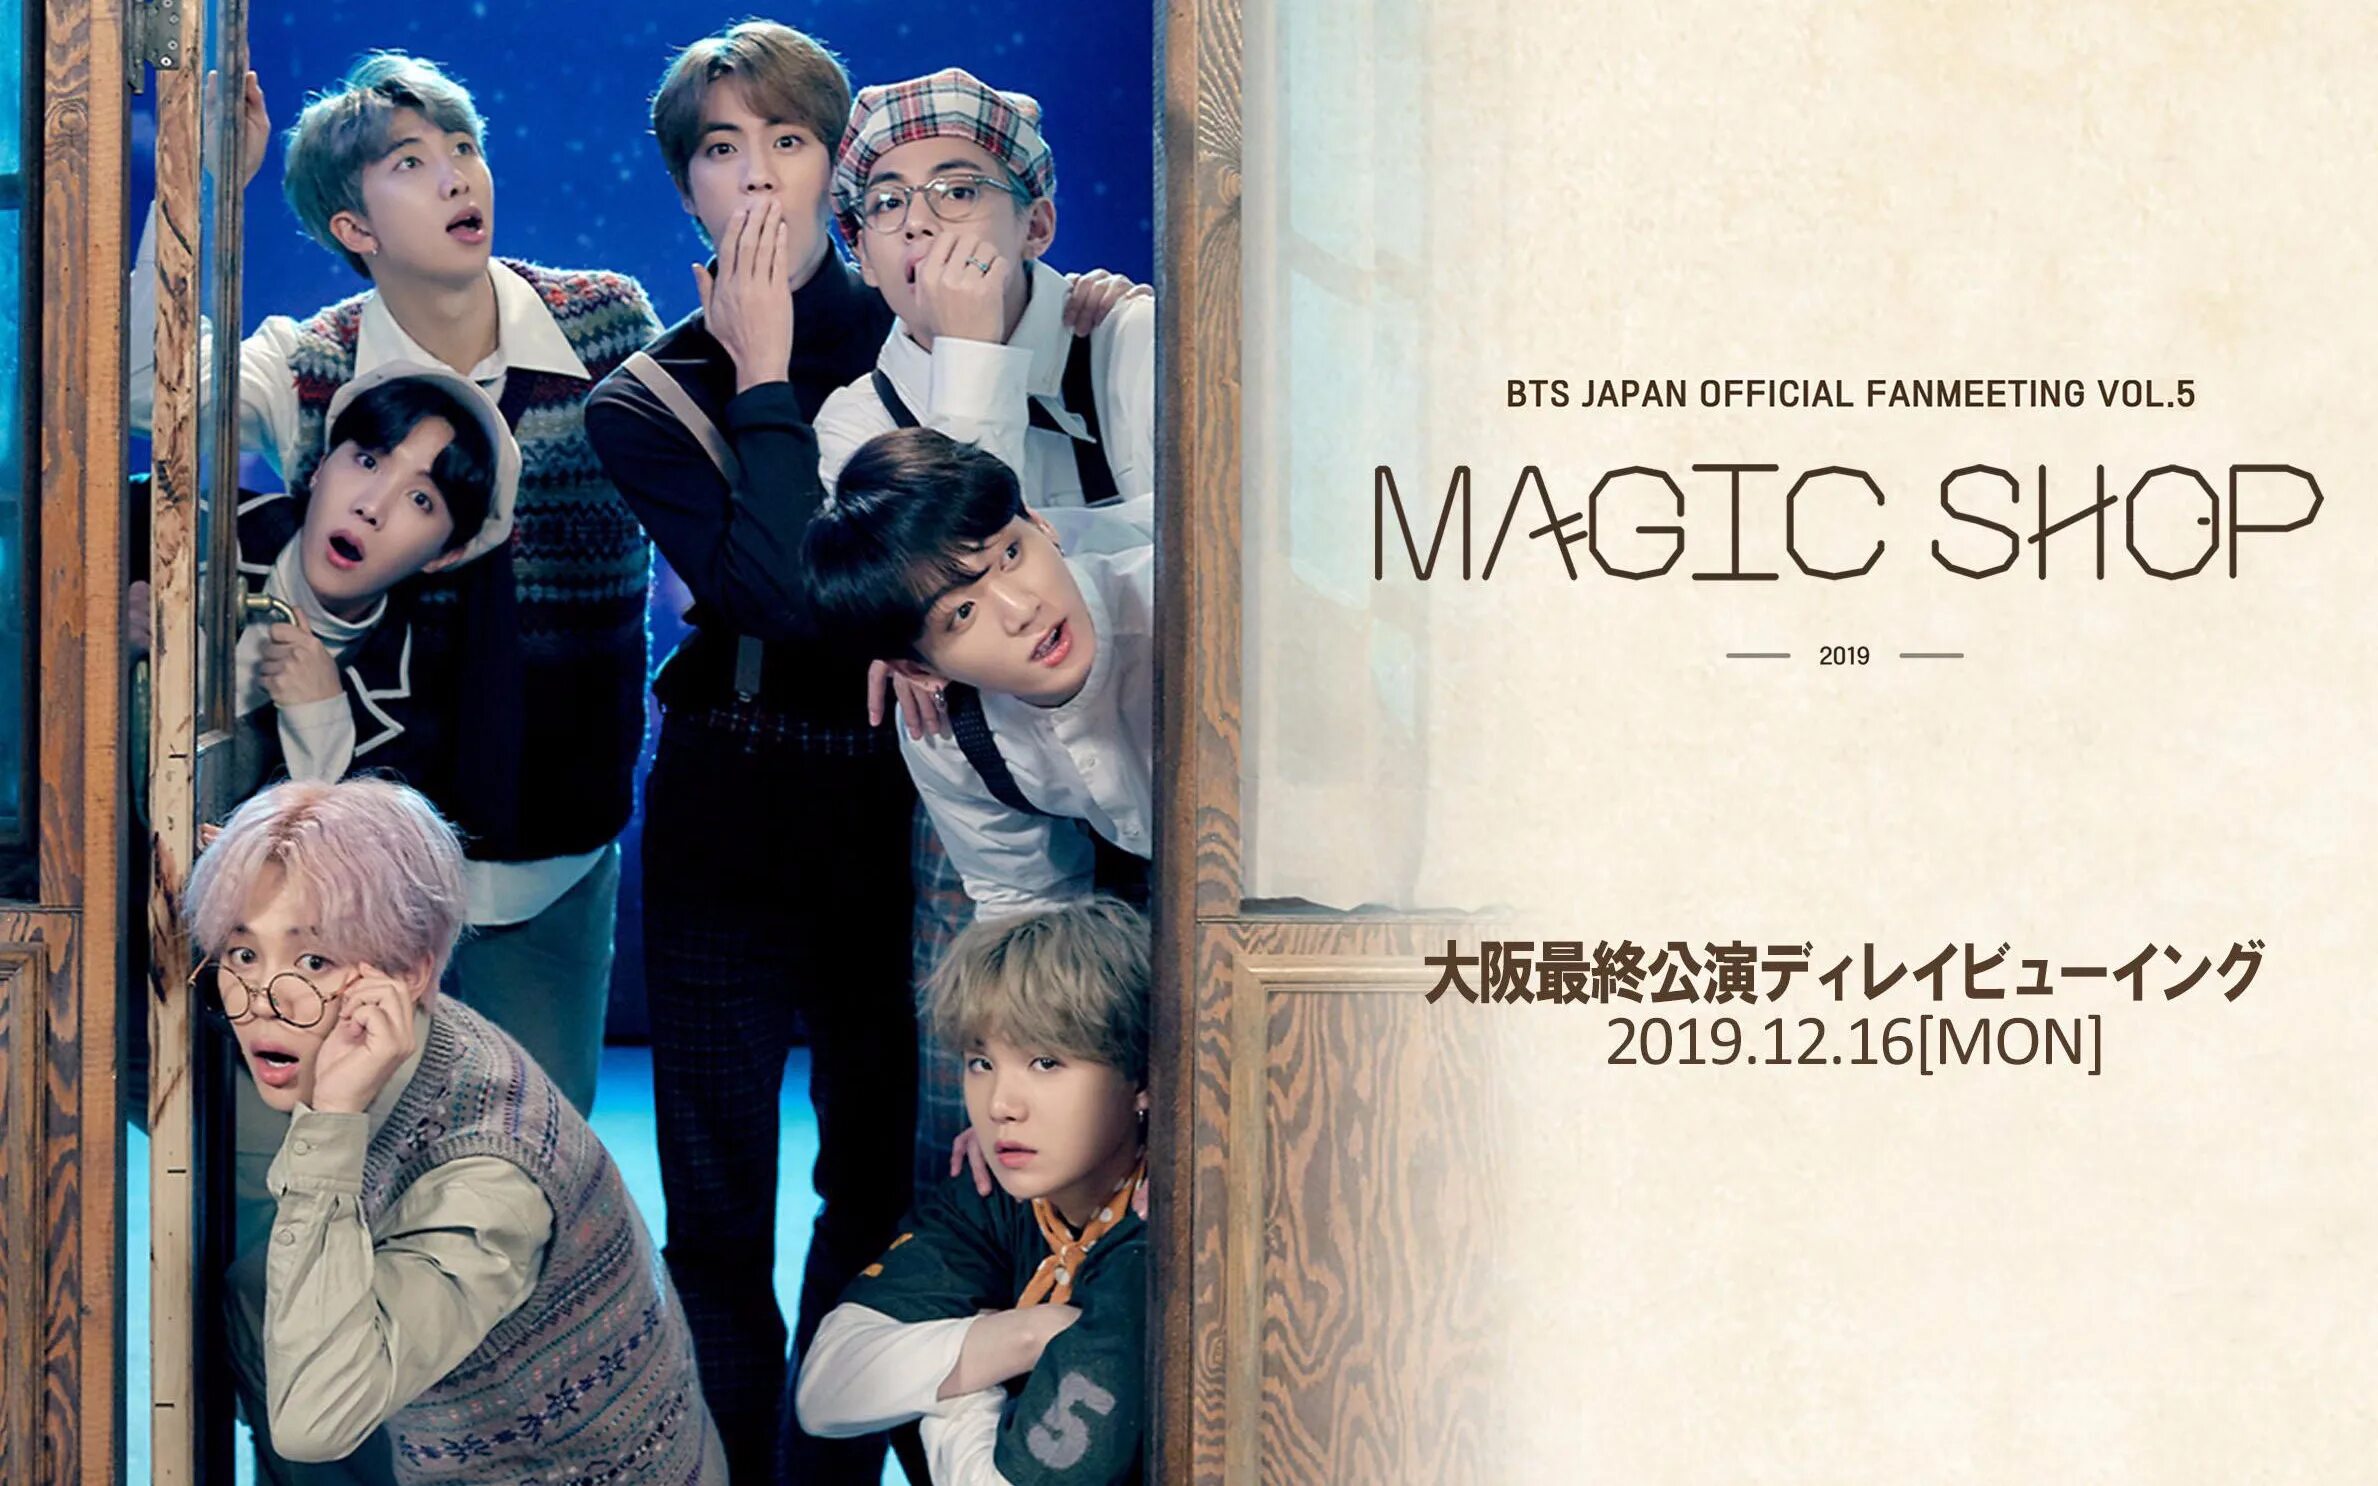 Magic bts. BTS 2019 Magic shop. Волшебный магазин БТС. BTS Magic shop Japan. Обои БТС Magic shop.